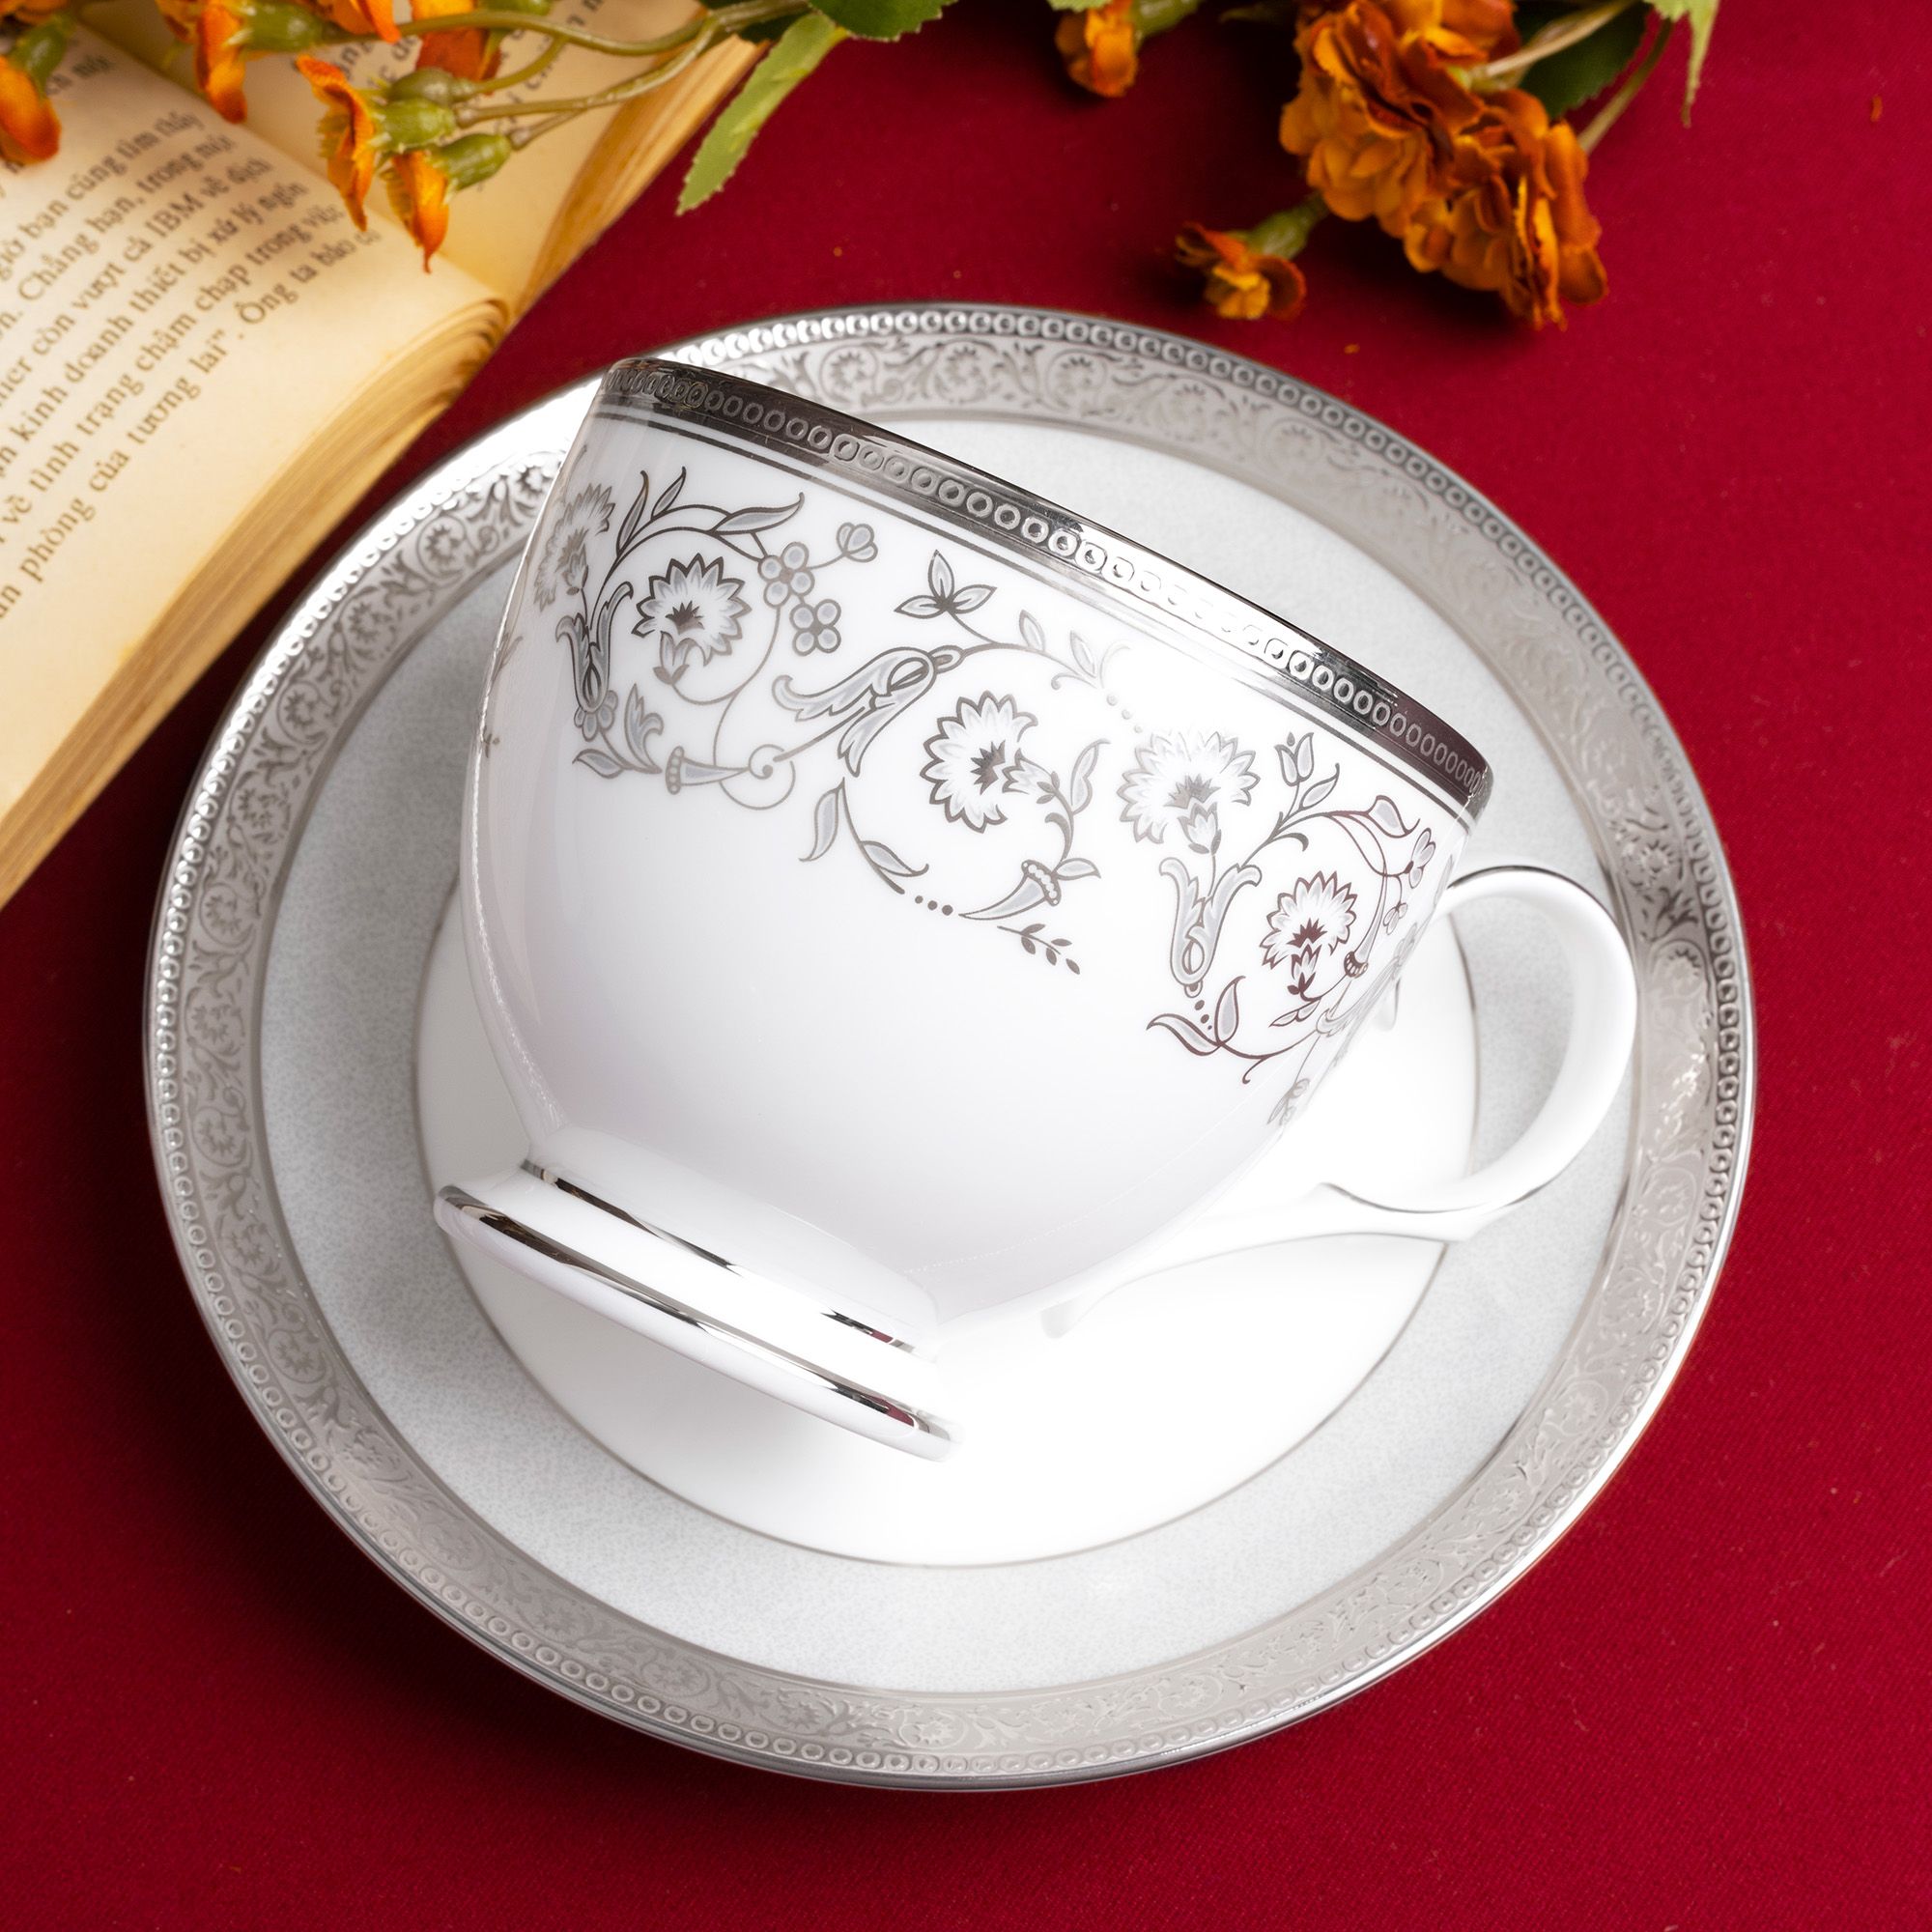  Bộ ấm chén uống trà 15 món sứ xương viền bạch kim | Summit Platinum 4919L-T017A 